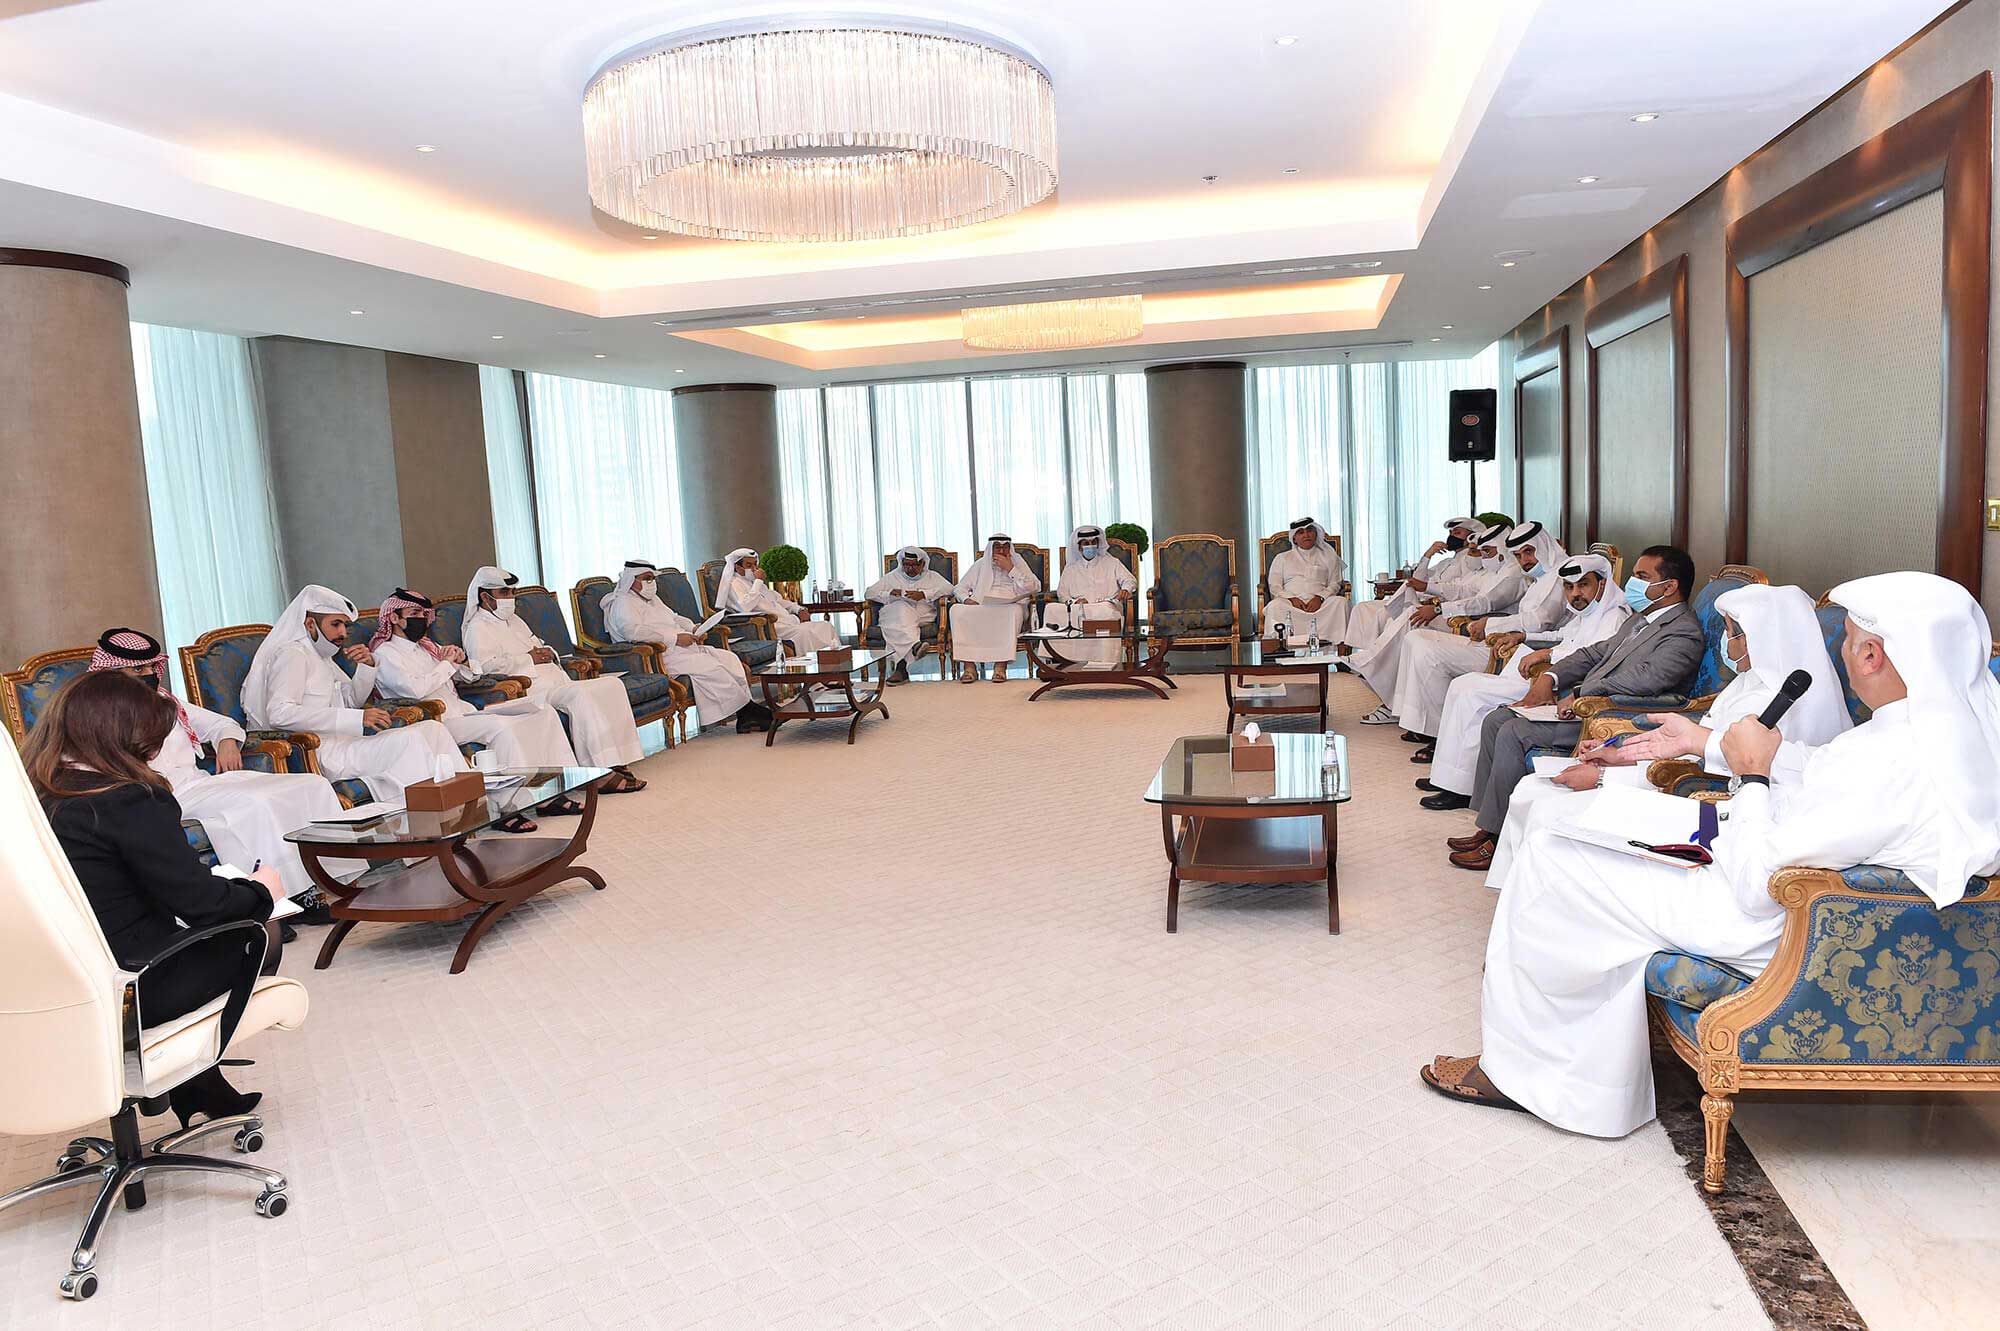 اجتماع رابطة رجال الاعمال القطريين لبحث الوضع الاقتصادي و التحديات التي تواجه القطاع الخاص في ظل انحسار ازمة كوفيد